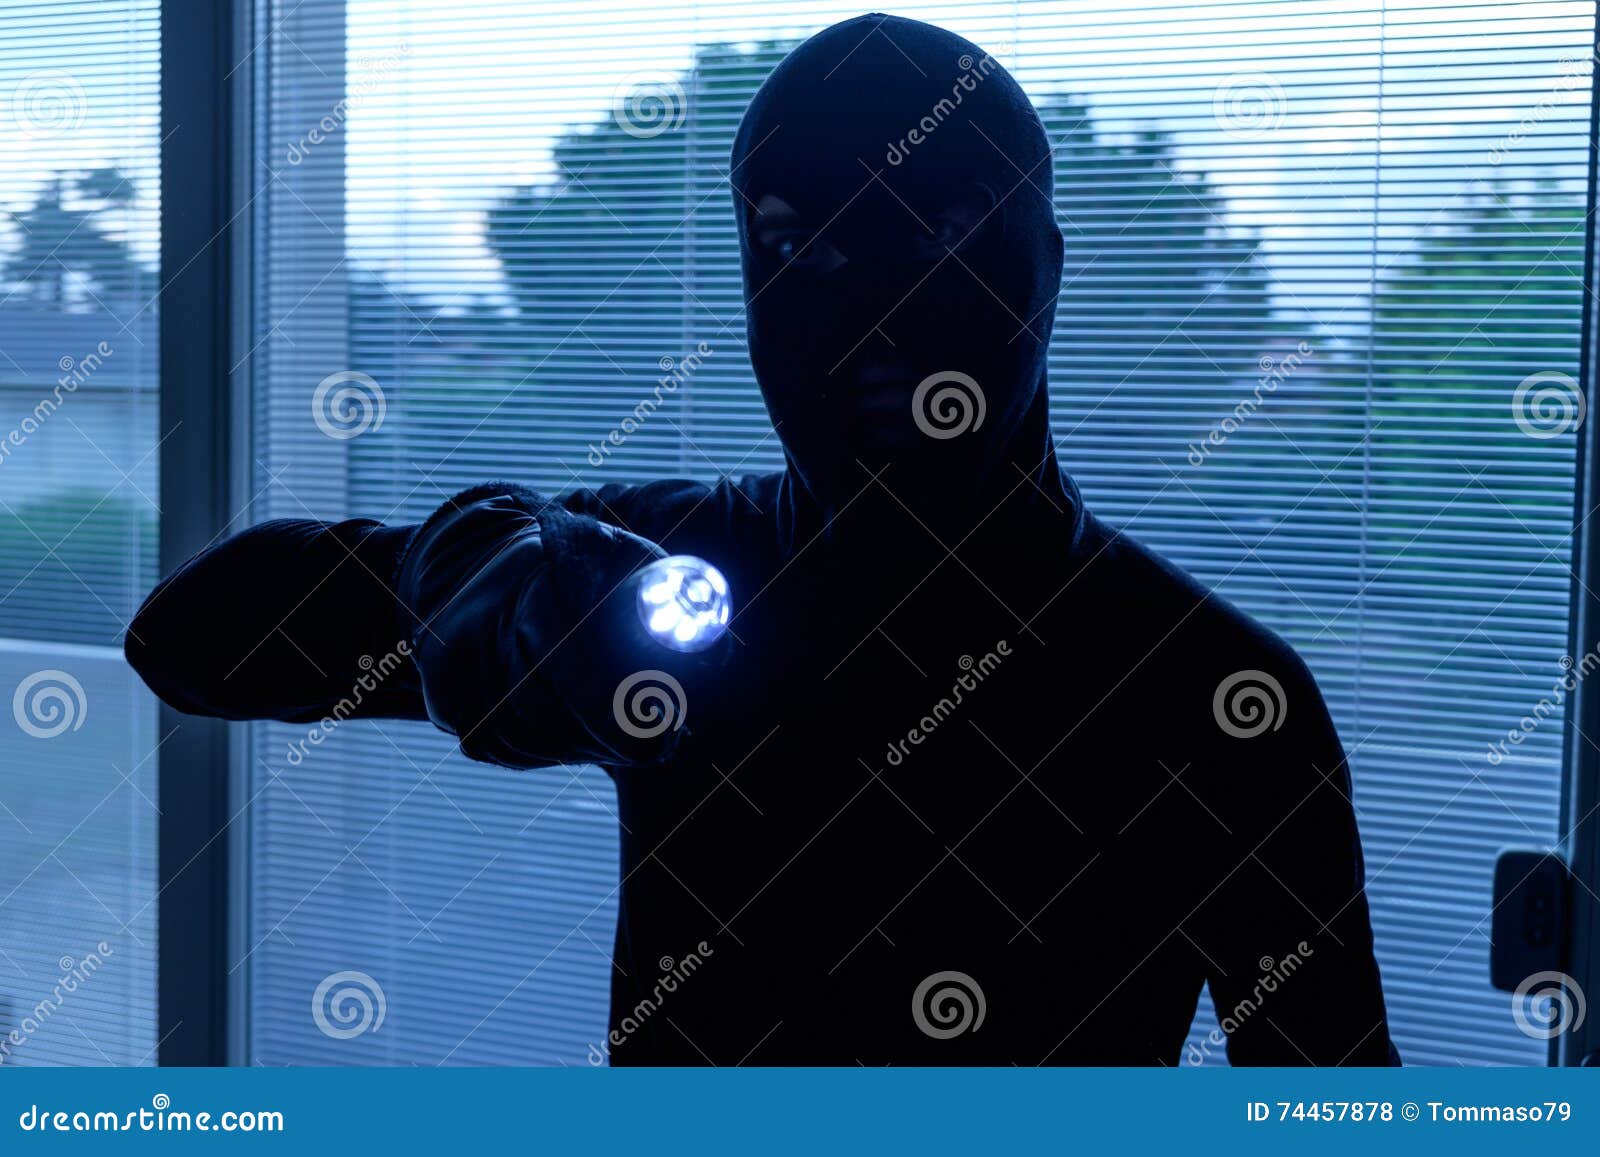 burglar wearing a balaclava